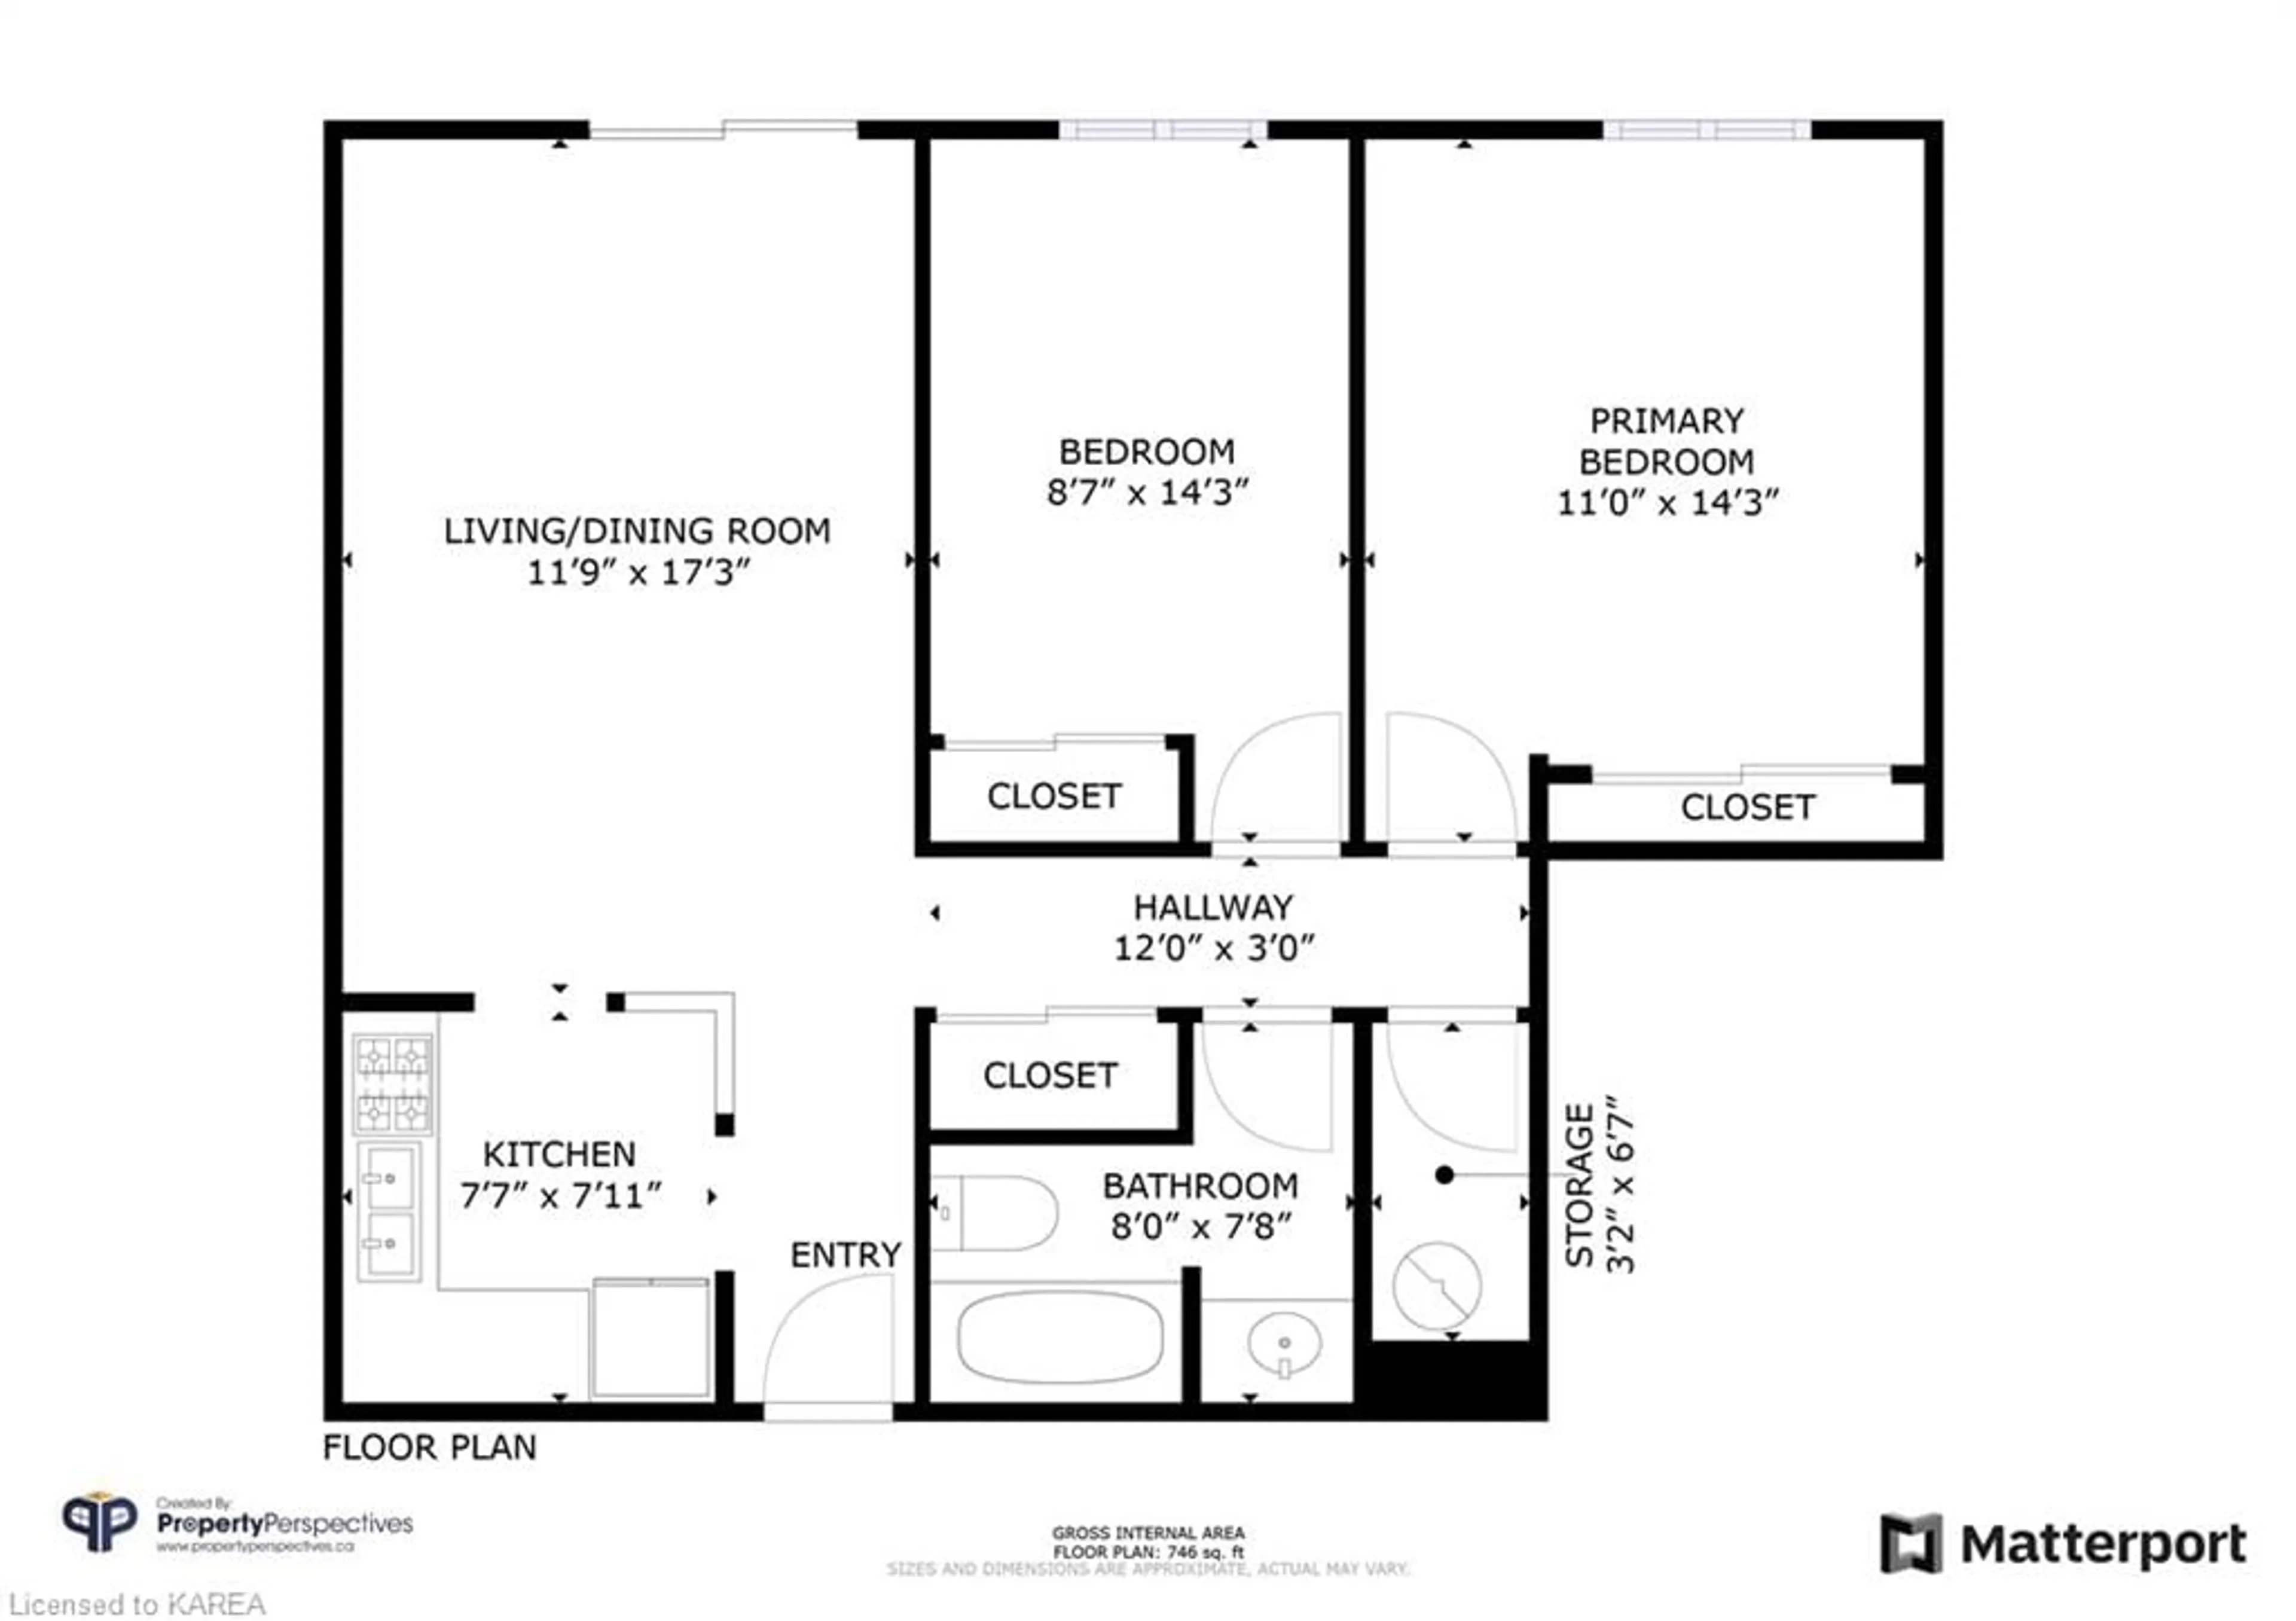 Floor plan for 310 Kingsdale Ave #414, Kingston Ontario K7M 8S1